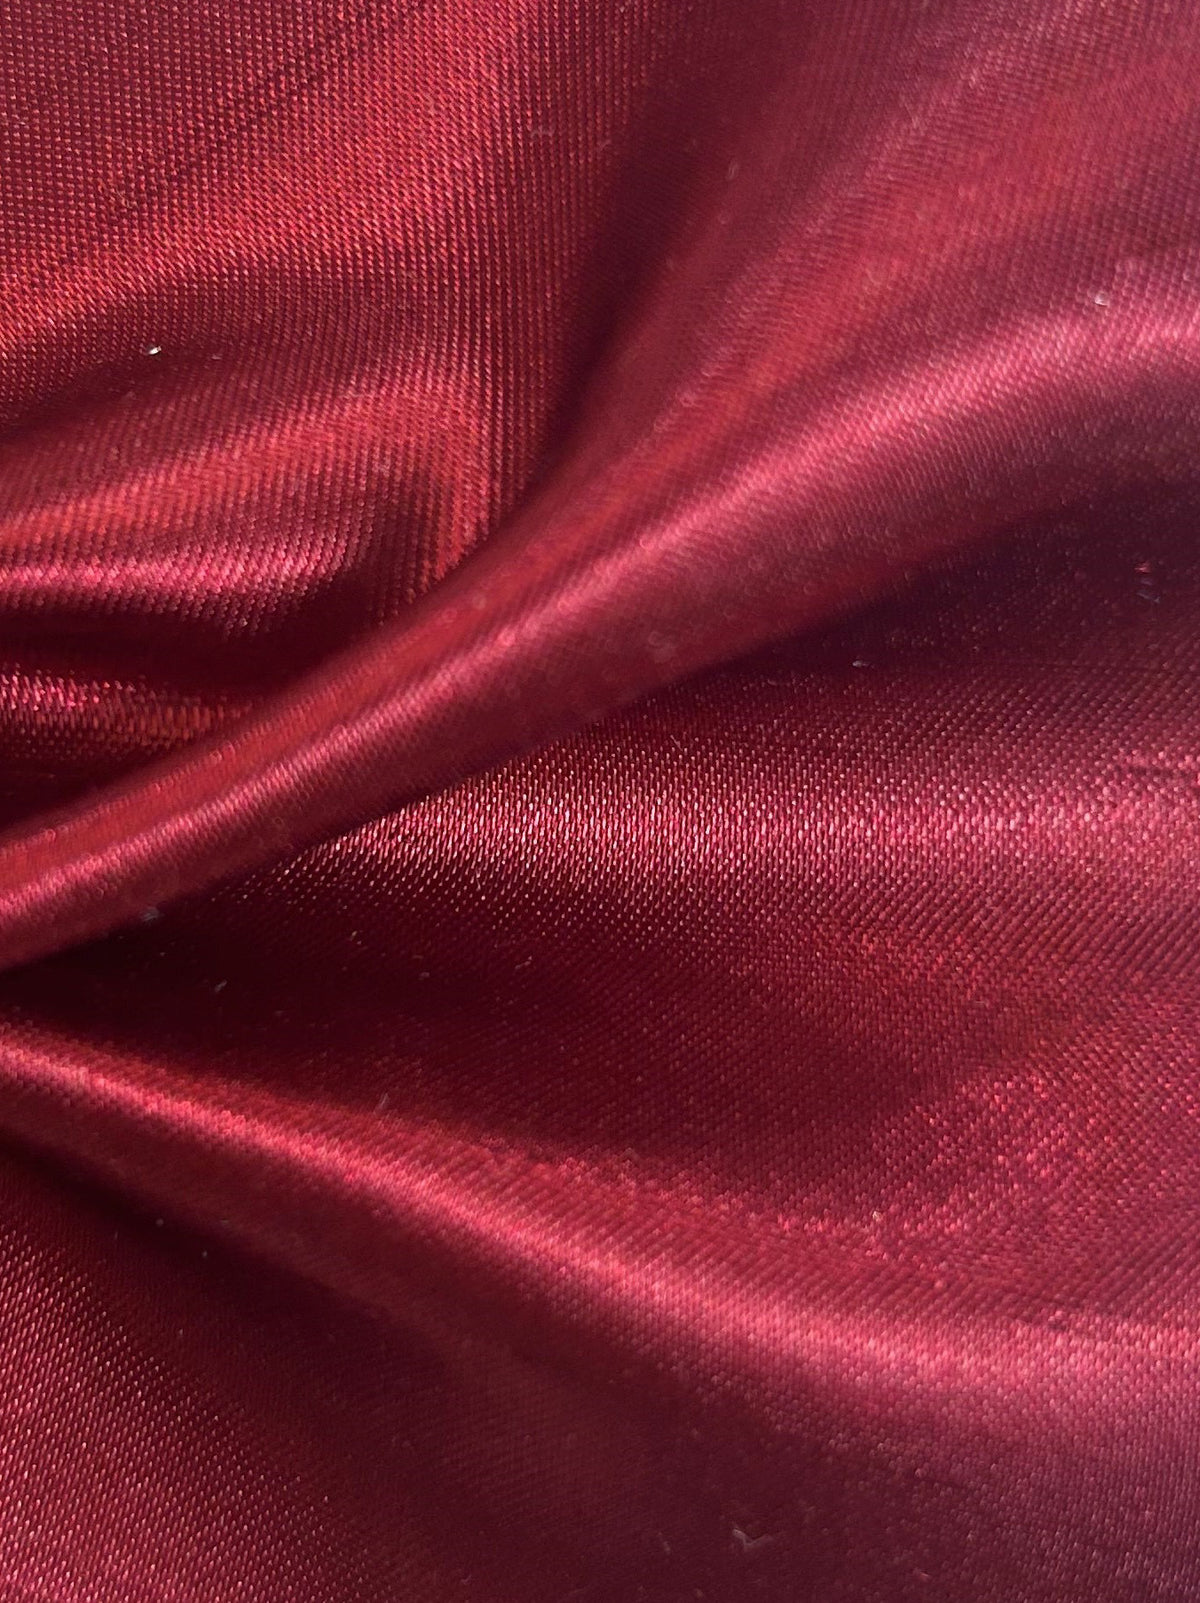 Dupion en satin de polyester rubis - Clarté